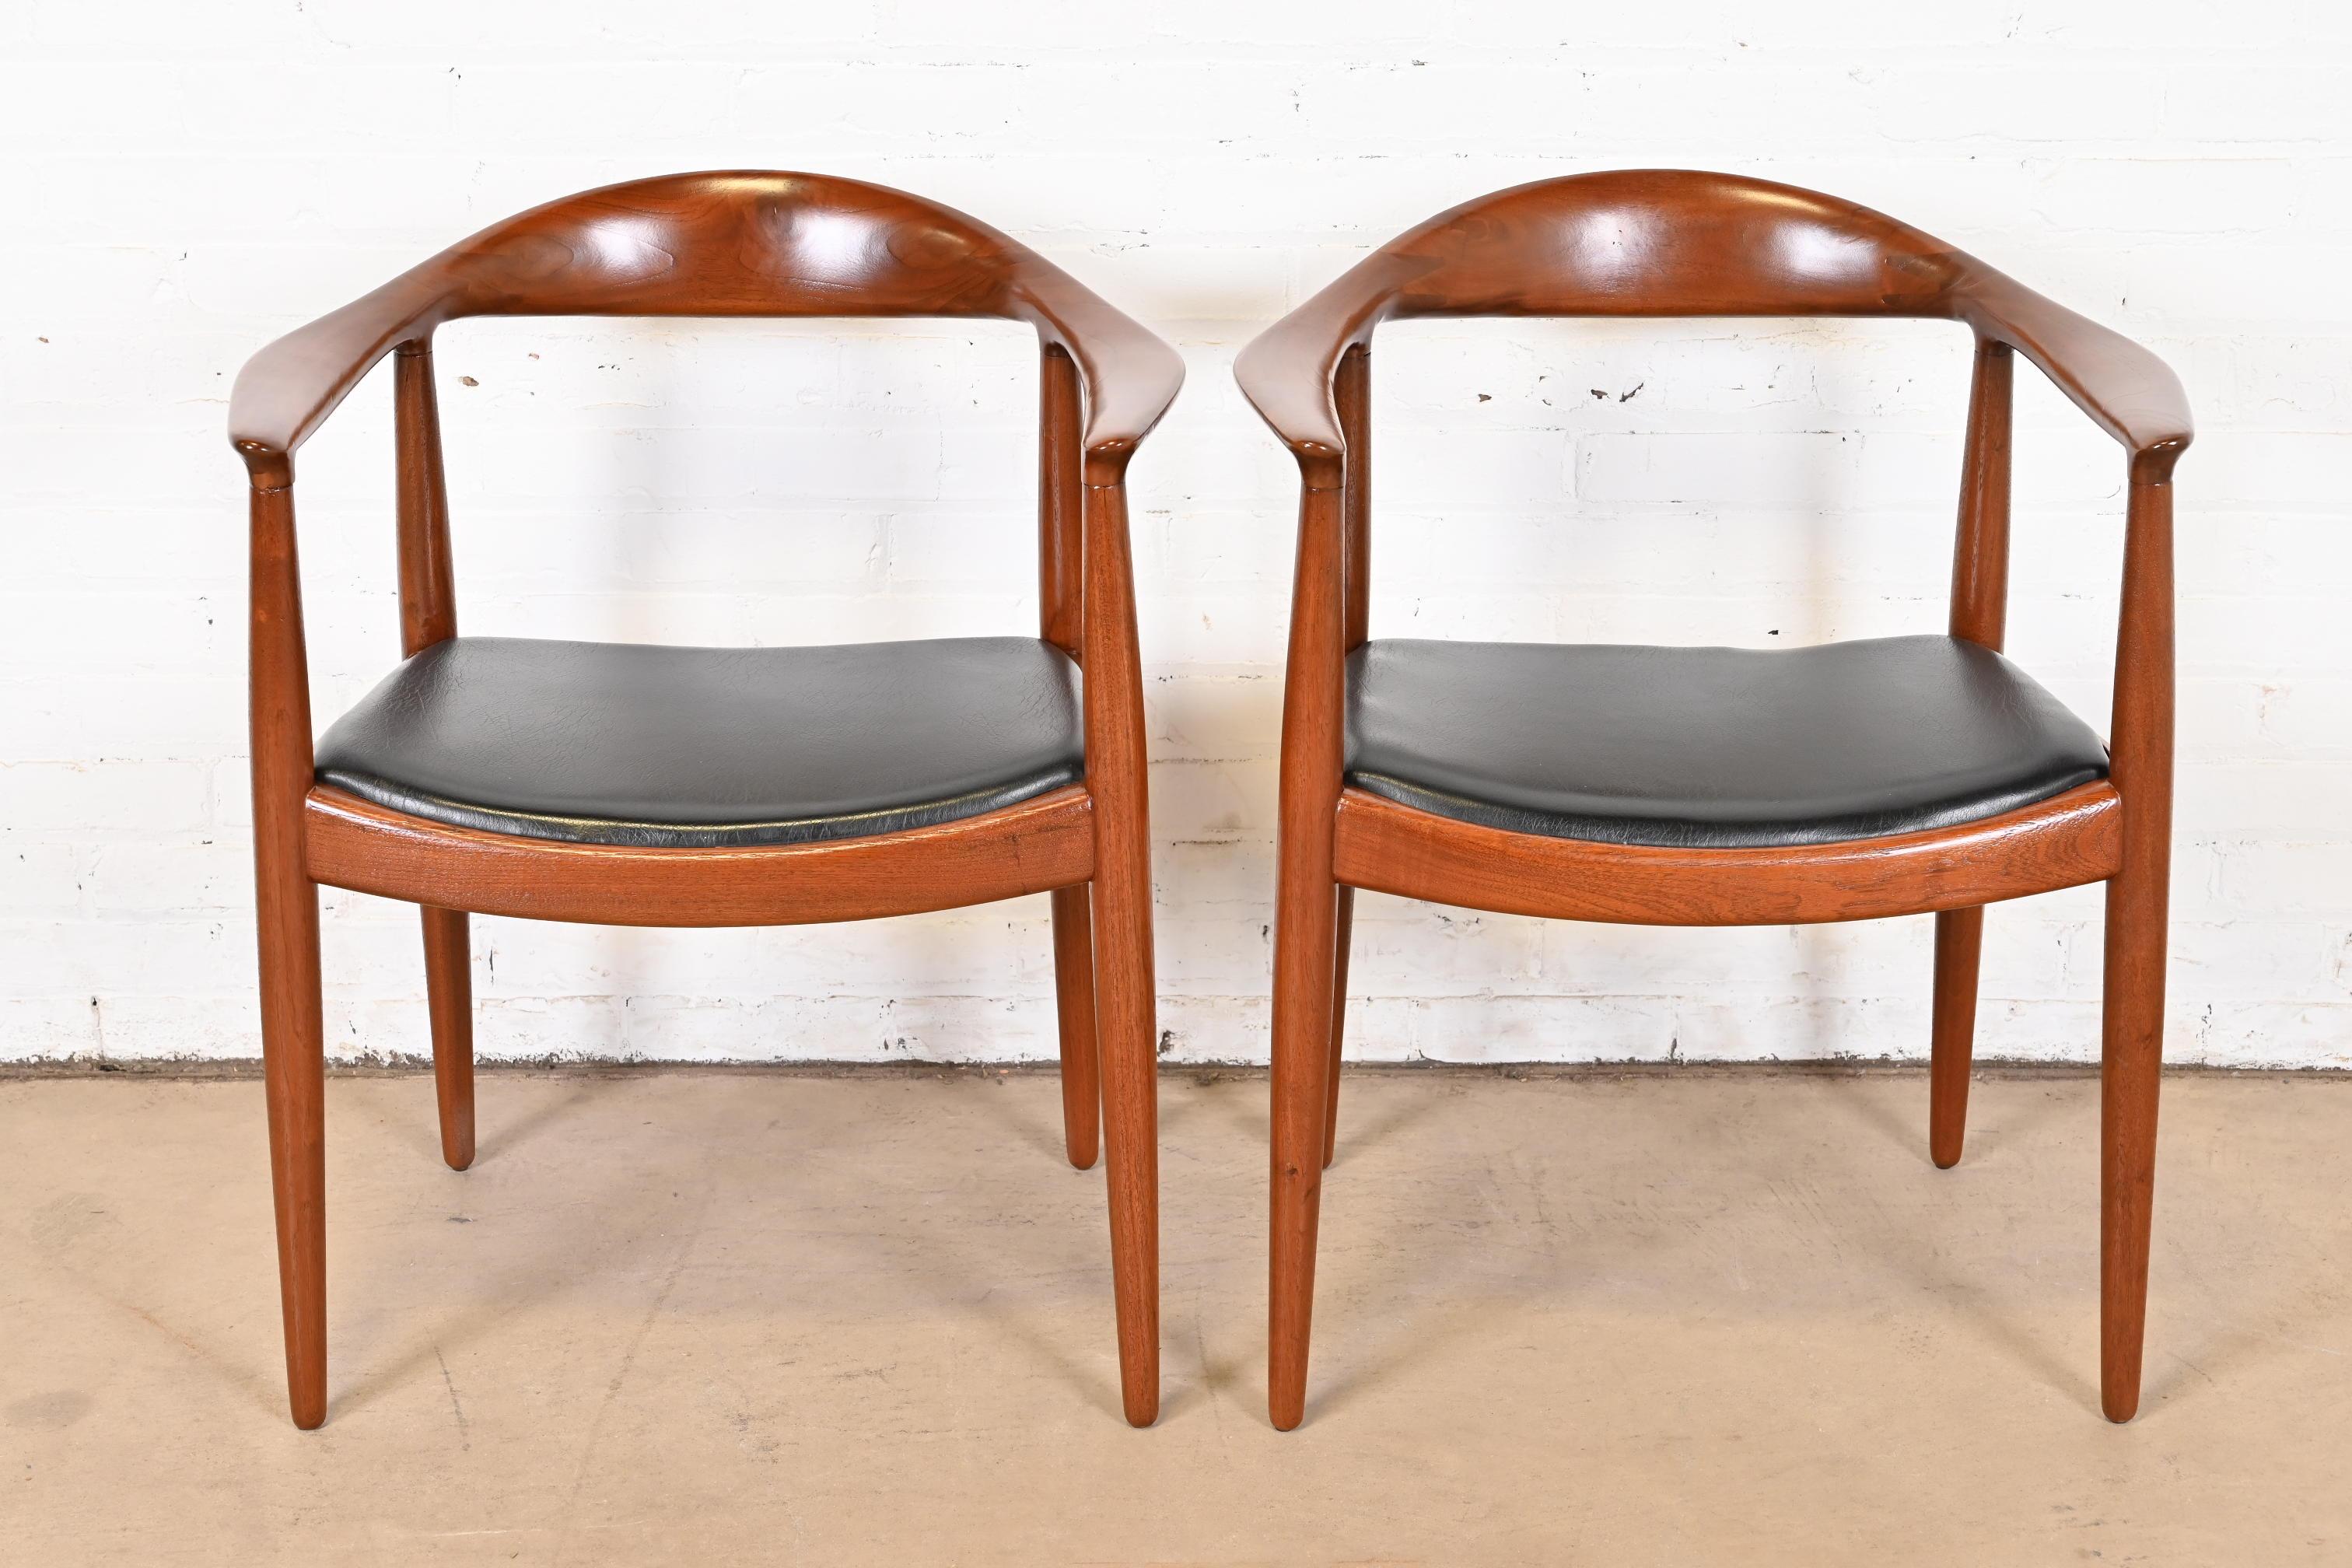 Nous proposons une paire rare et exceptionnelle de fauteuils JH 501. Plus communément appelées 